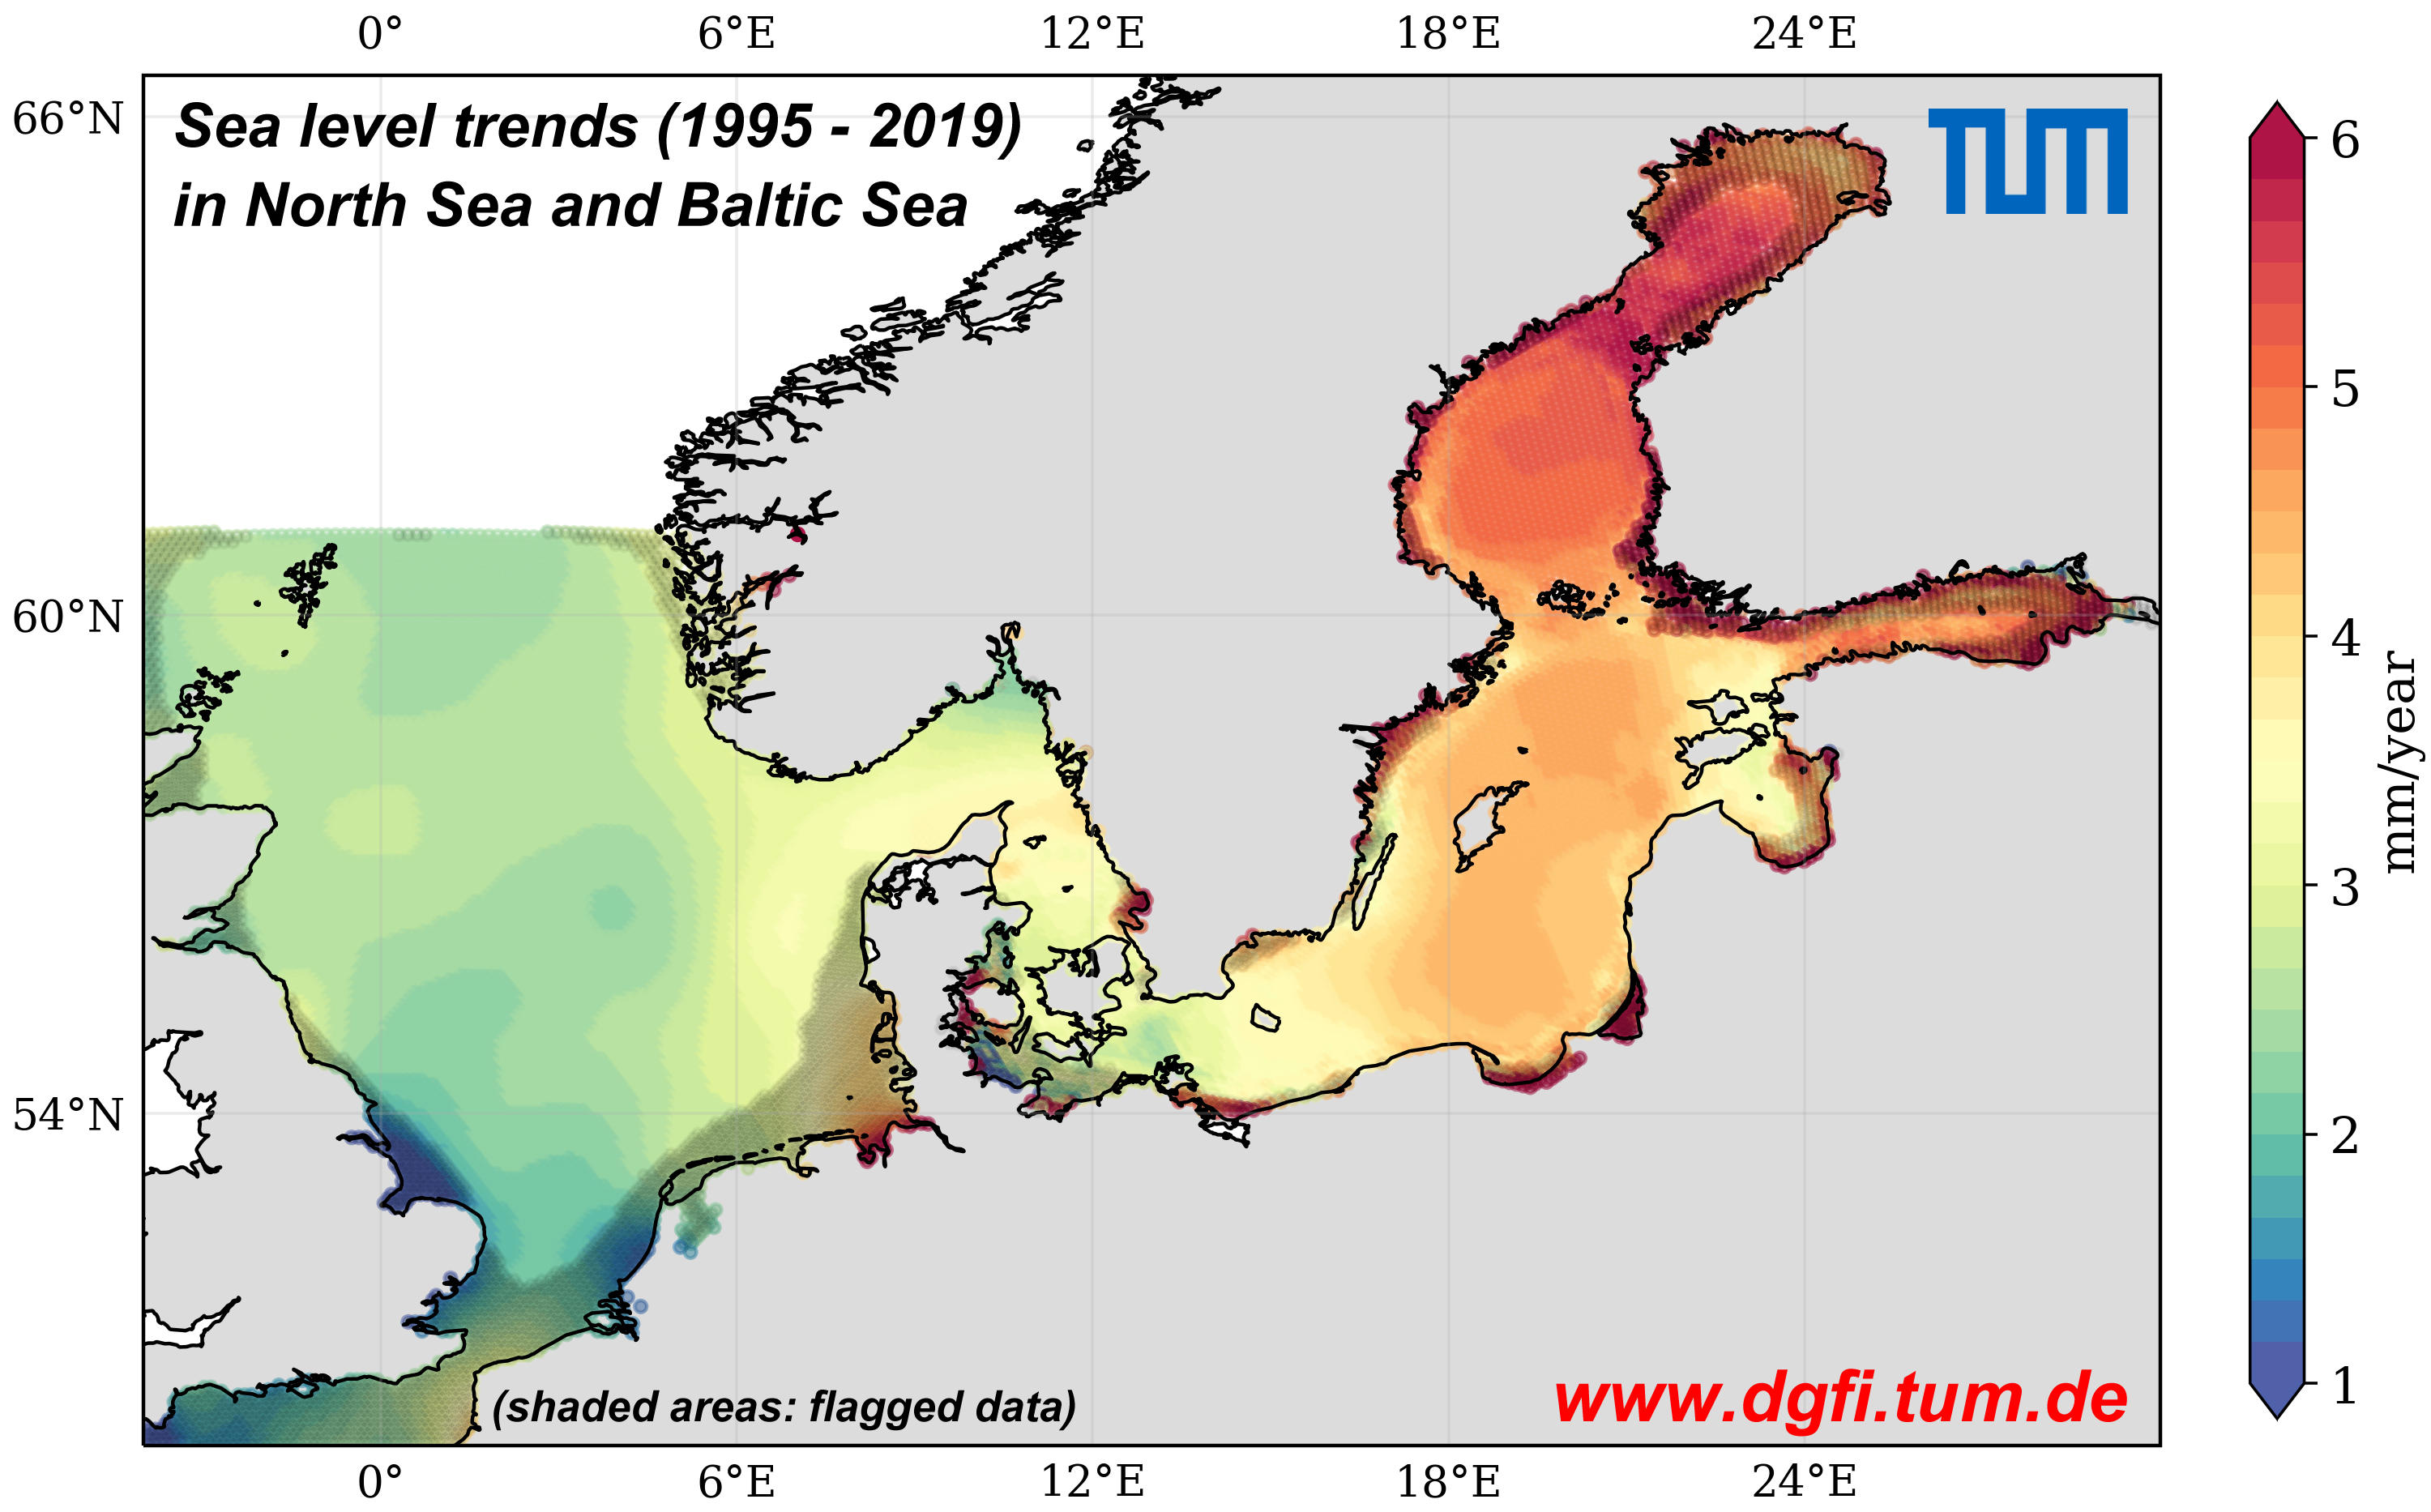 Anstieg des mittleren Meeresspiegels in Nord- und Ostsee (Millimeter pro Jahr), berechnet aus Beobachtungsdaten der Satellitenaltimetrie zwischen 1995 und 2019. Graue Schattierung kennzeichnet Bereiche mit hoher statistischer Unsicherheit.